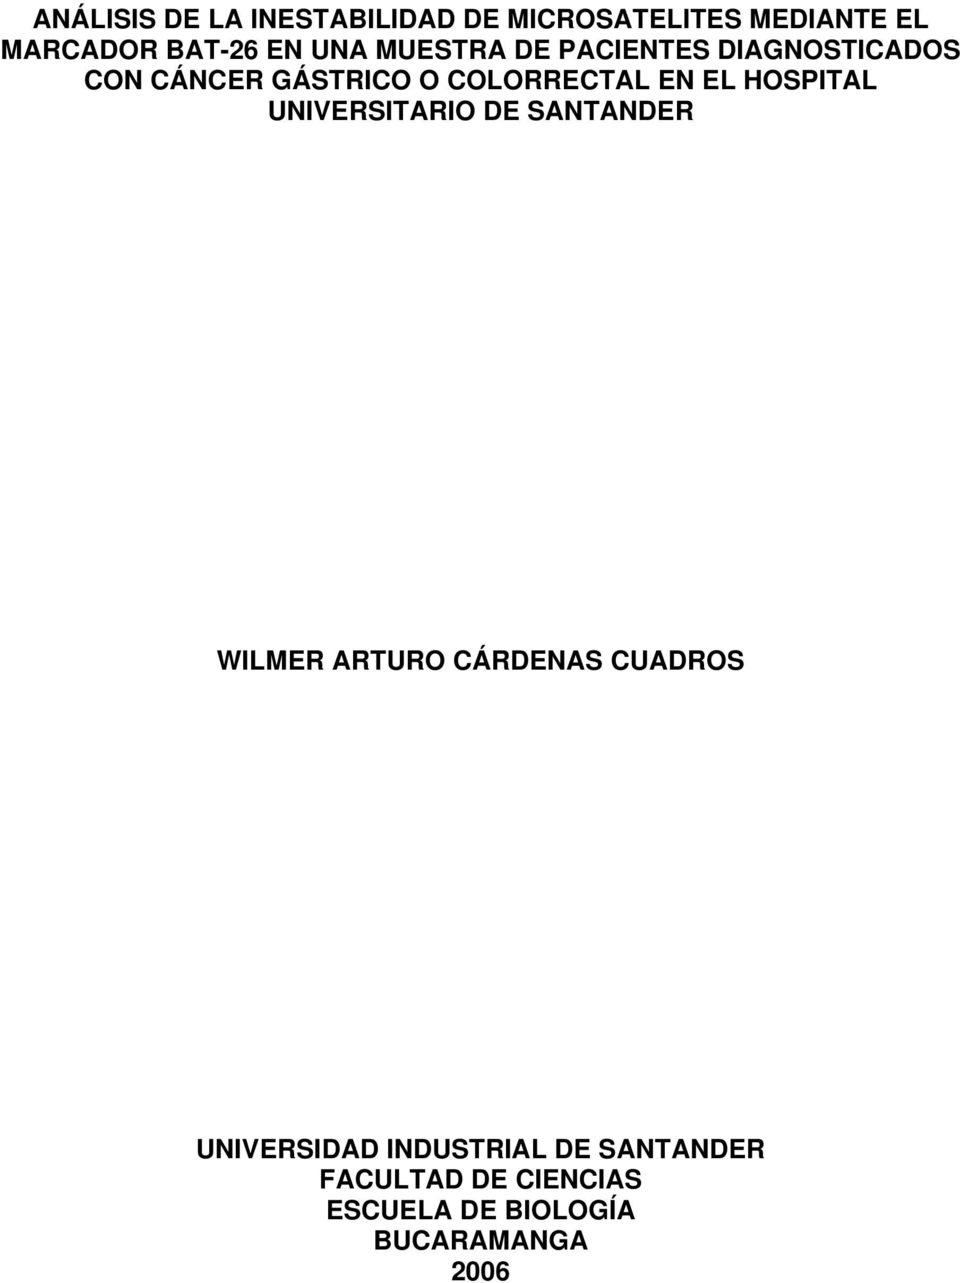 HOSPITAL UNIVERSITARIO DE SANTANDER WILMER ARTURO CÁRDENAS CUADROS UNIVERSIDAD